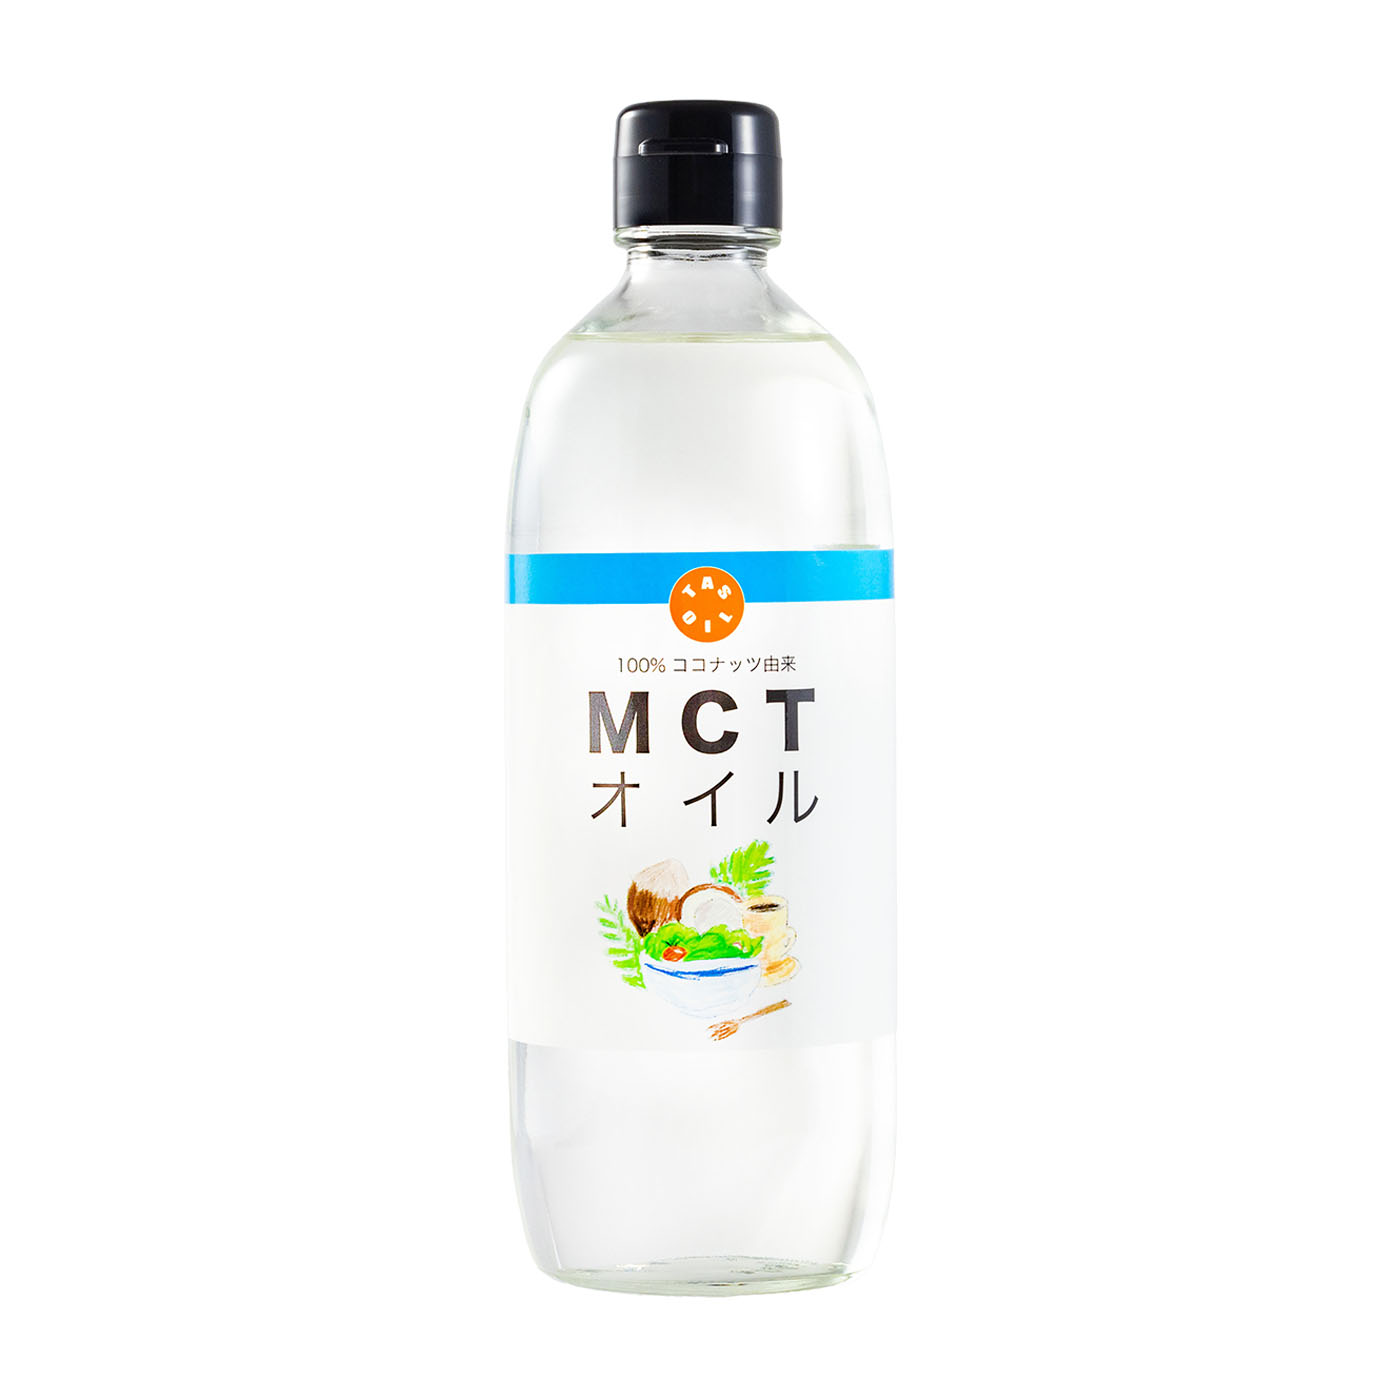 2本 ヴィー MCTオイル 250ml ココナッツオイル ドレッシング MCToil oil ココナッツ由来 中鎖脂肪酸油 ダイエット 美容 健康 ケトン体 ヘルシー 燃焼 代謝